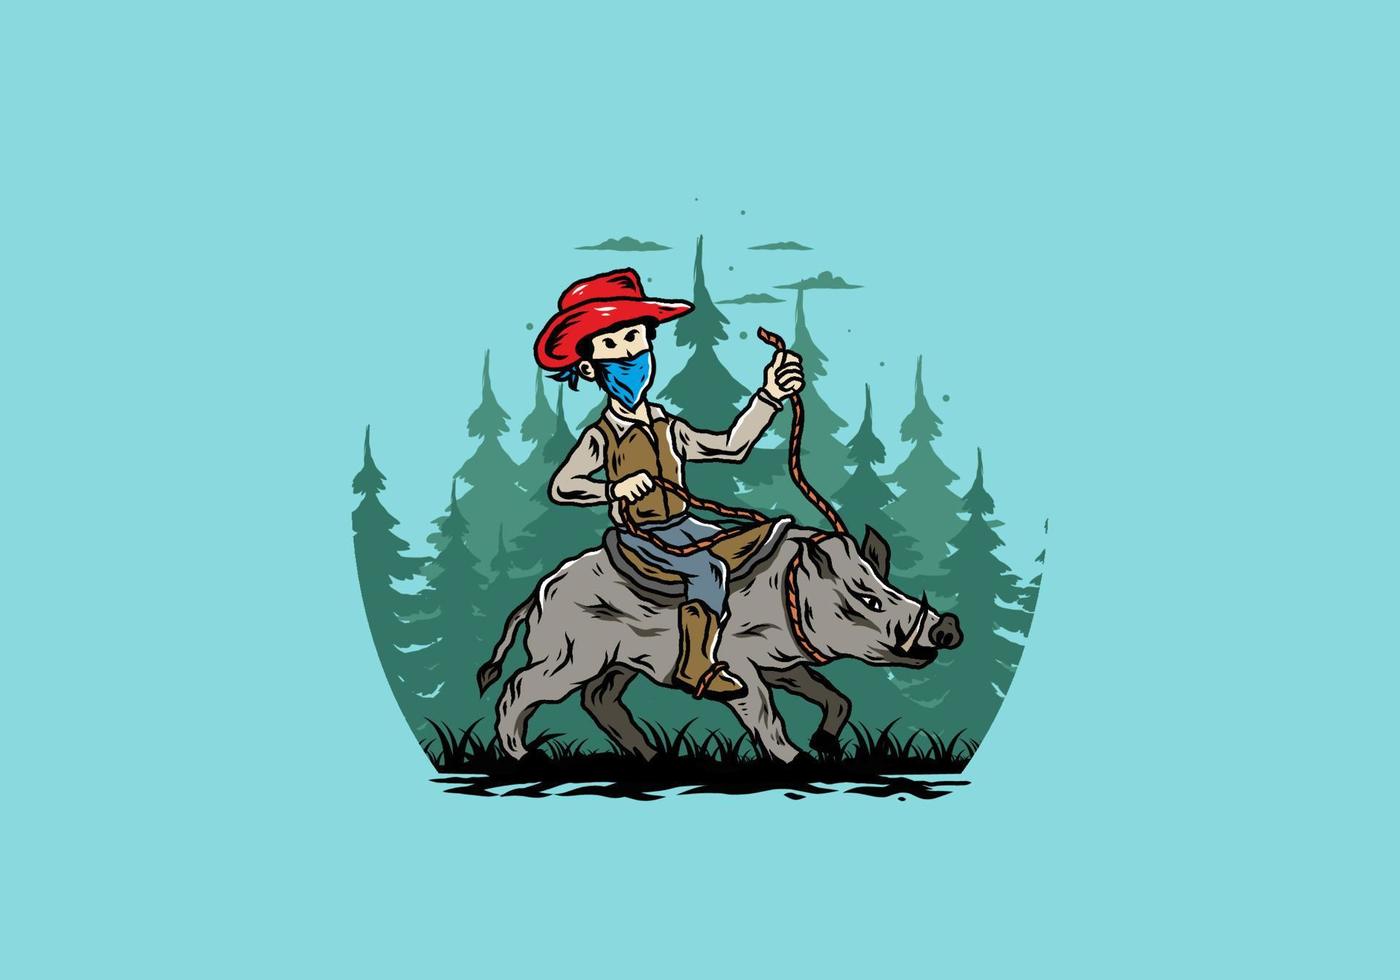 Man riding a wild boar illustration design vector